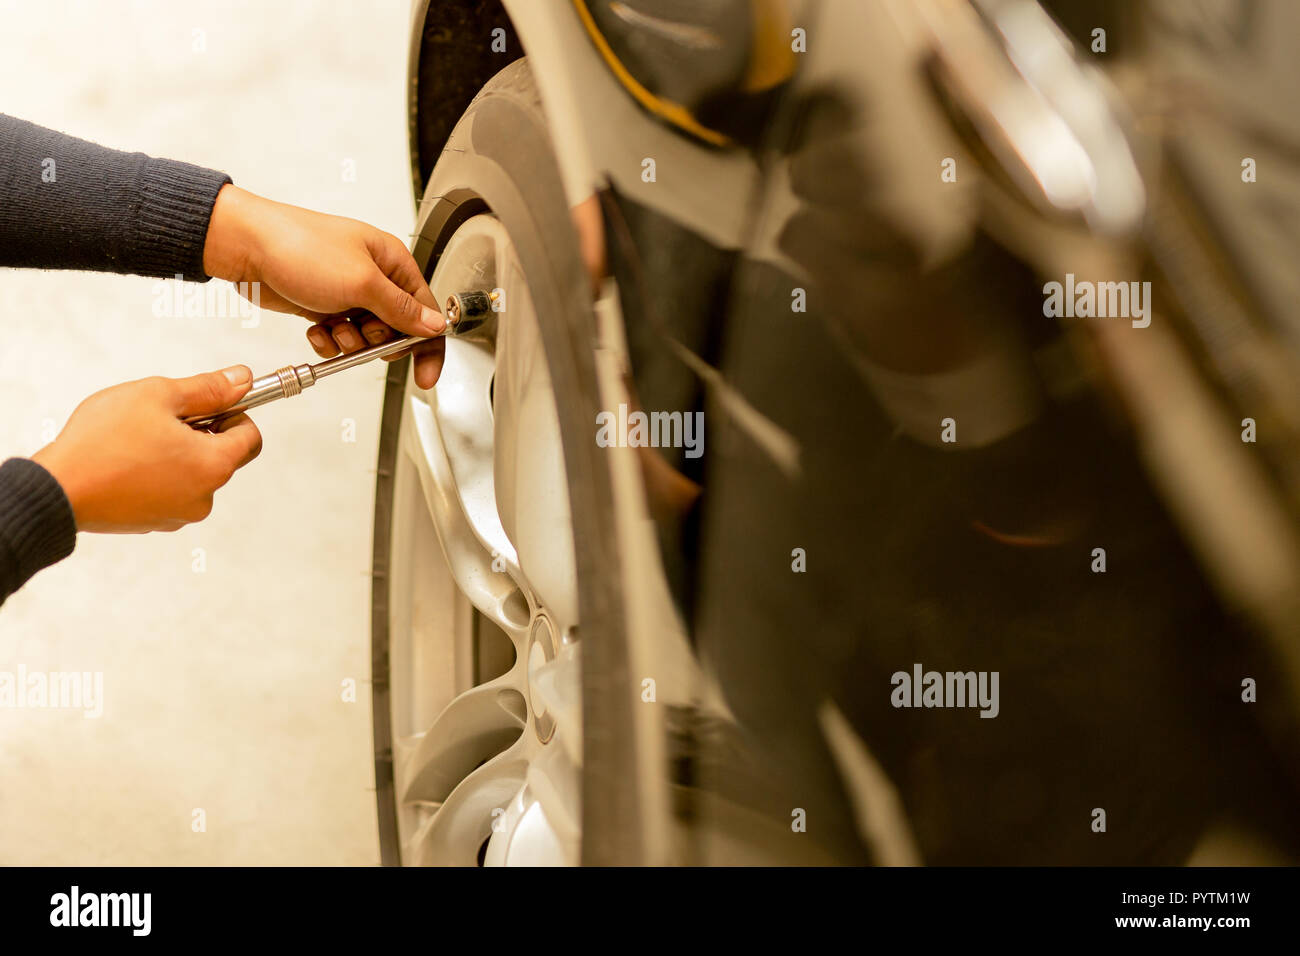 Mechaniker Luftdruck prüfen und füllen die Luft in den Reifen  Stockfotografie - Alamy